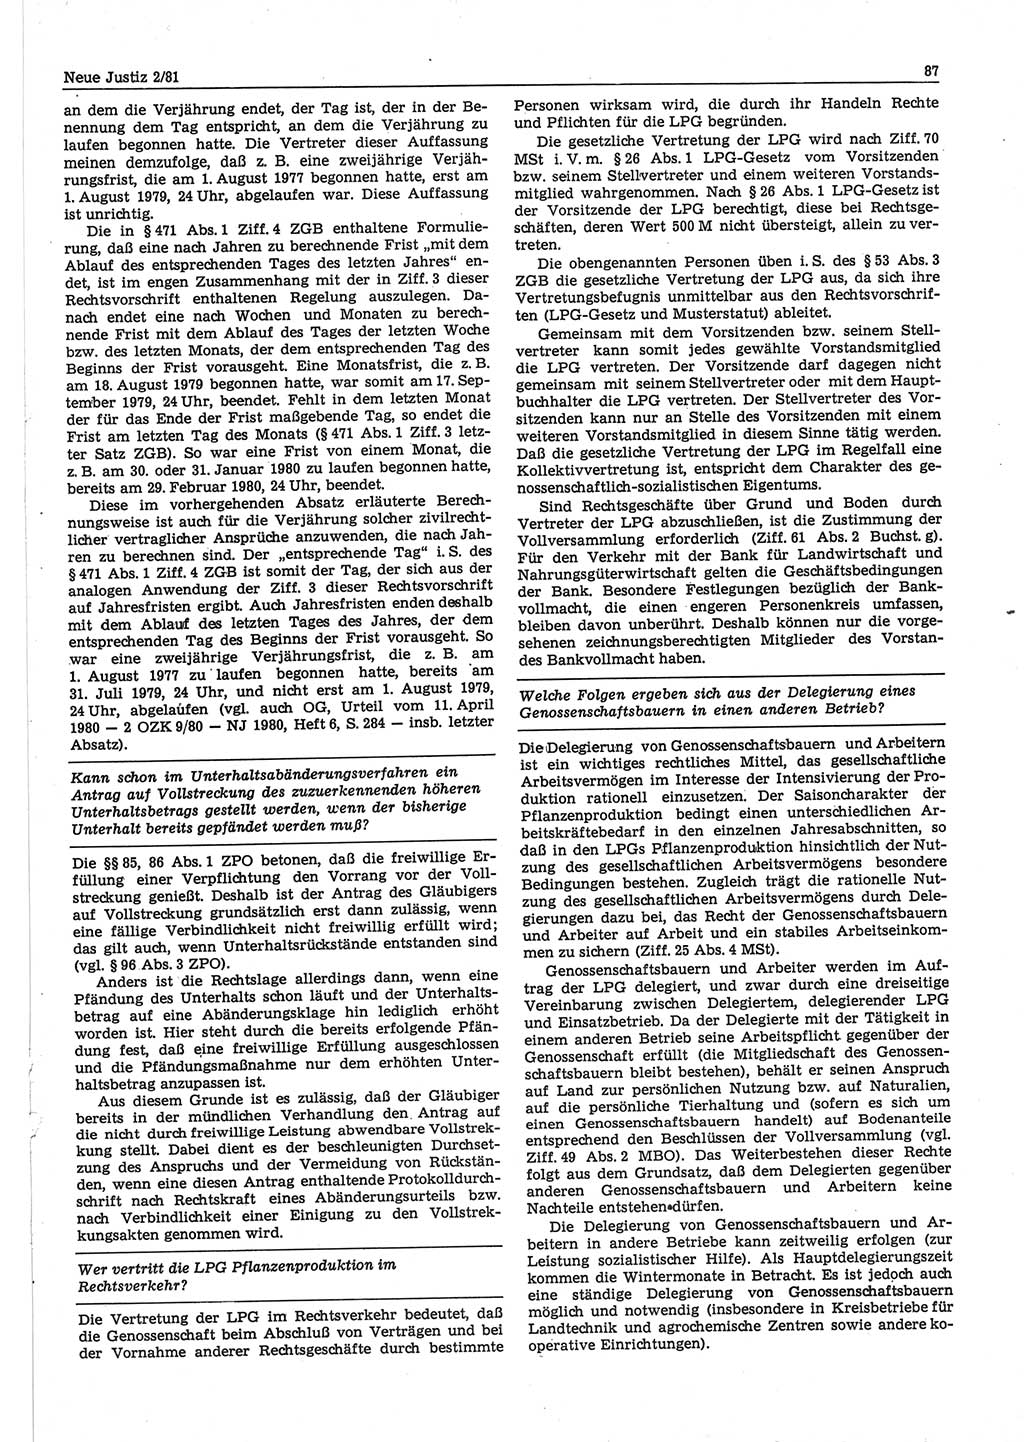 Neue Justiz (NJ), Zeitschrift für sozialistisches Recht und Gesetzlichkeit [Deutsche Demokratische Republik (DDR)], 35. Jahrgang 1981, Seite 87 (NJ DDR 1981, S. 87)